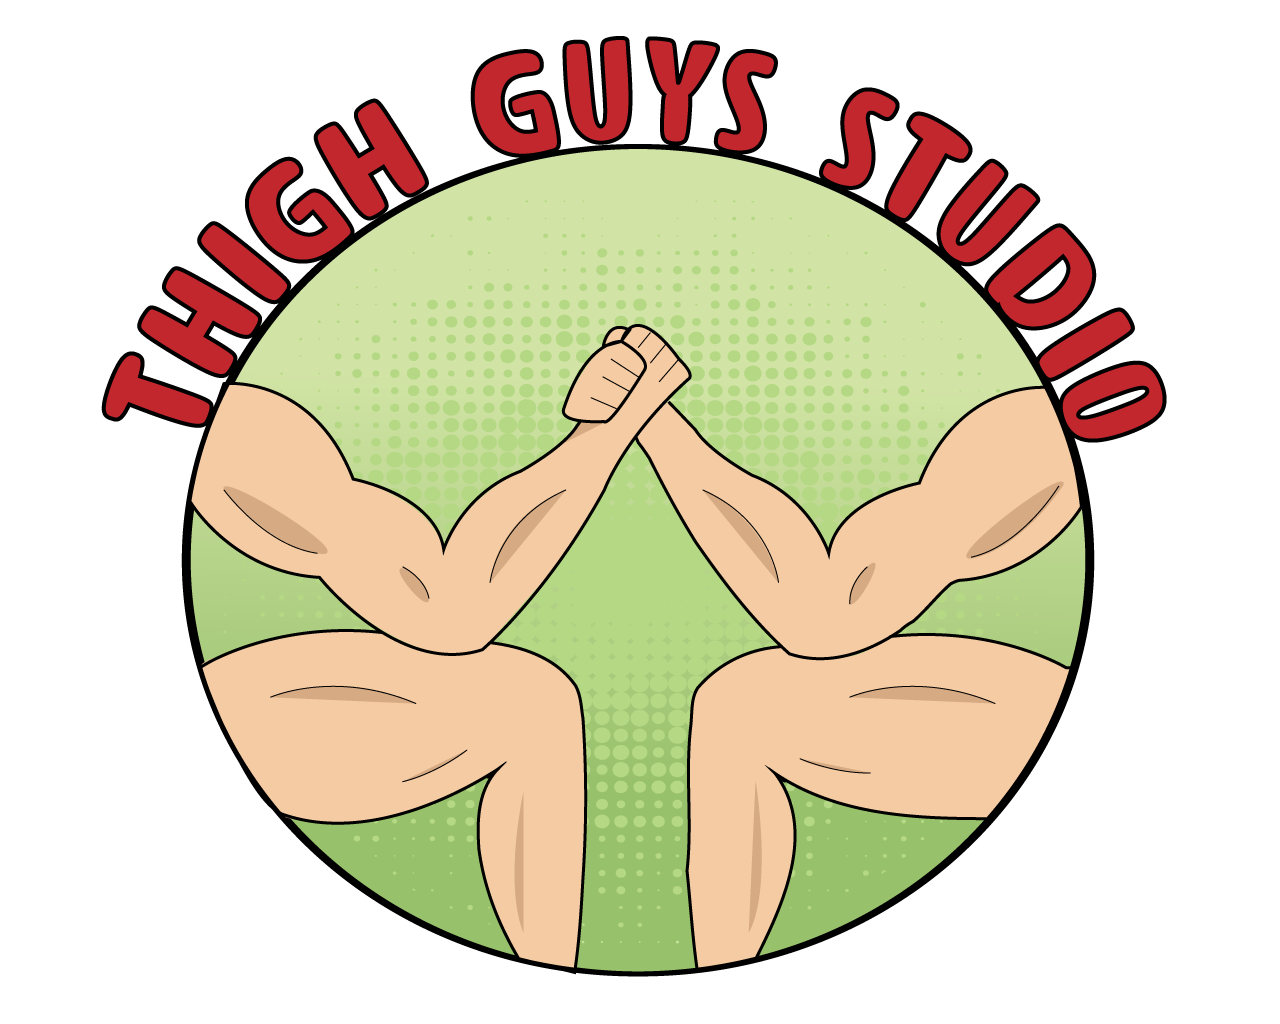 Thigh Guys Studio